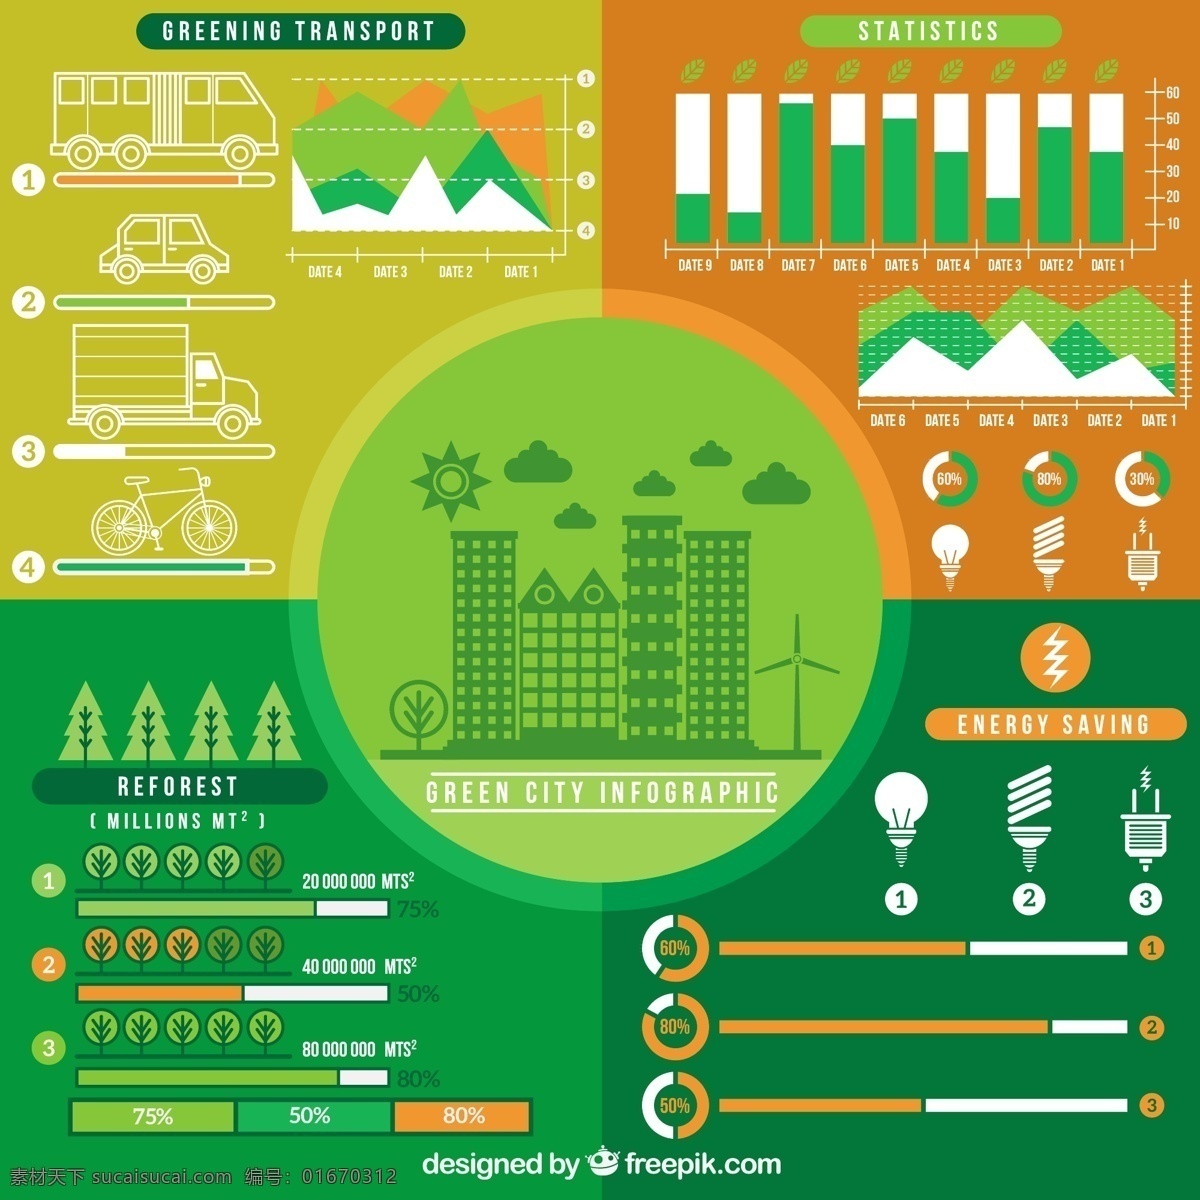 手绘 图表 元素 生态 城市 市方面 自然 蔬菜 图形 能源 有机 图 信息 流程 数据 要素 信息图表元素 环境 绿色